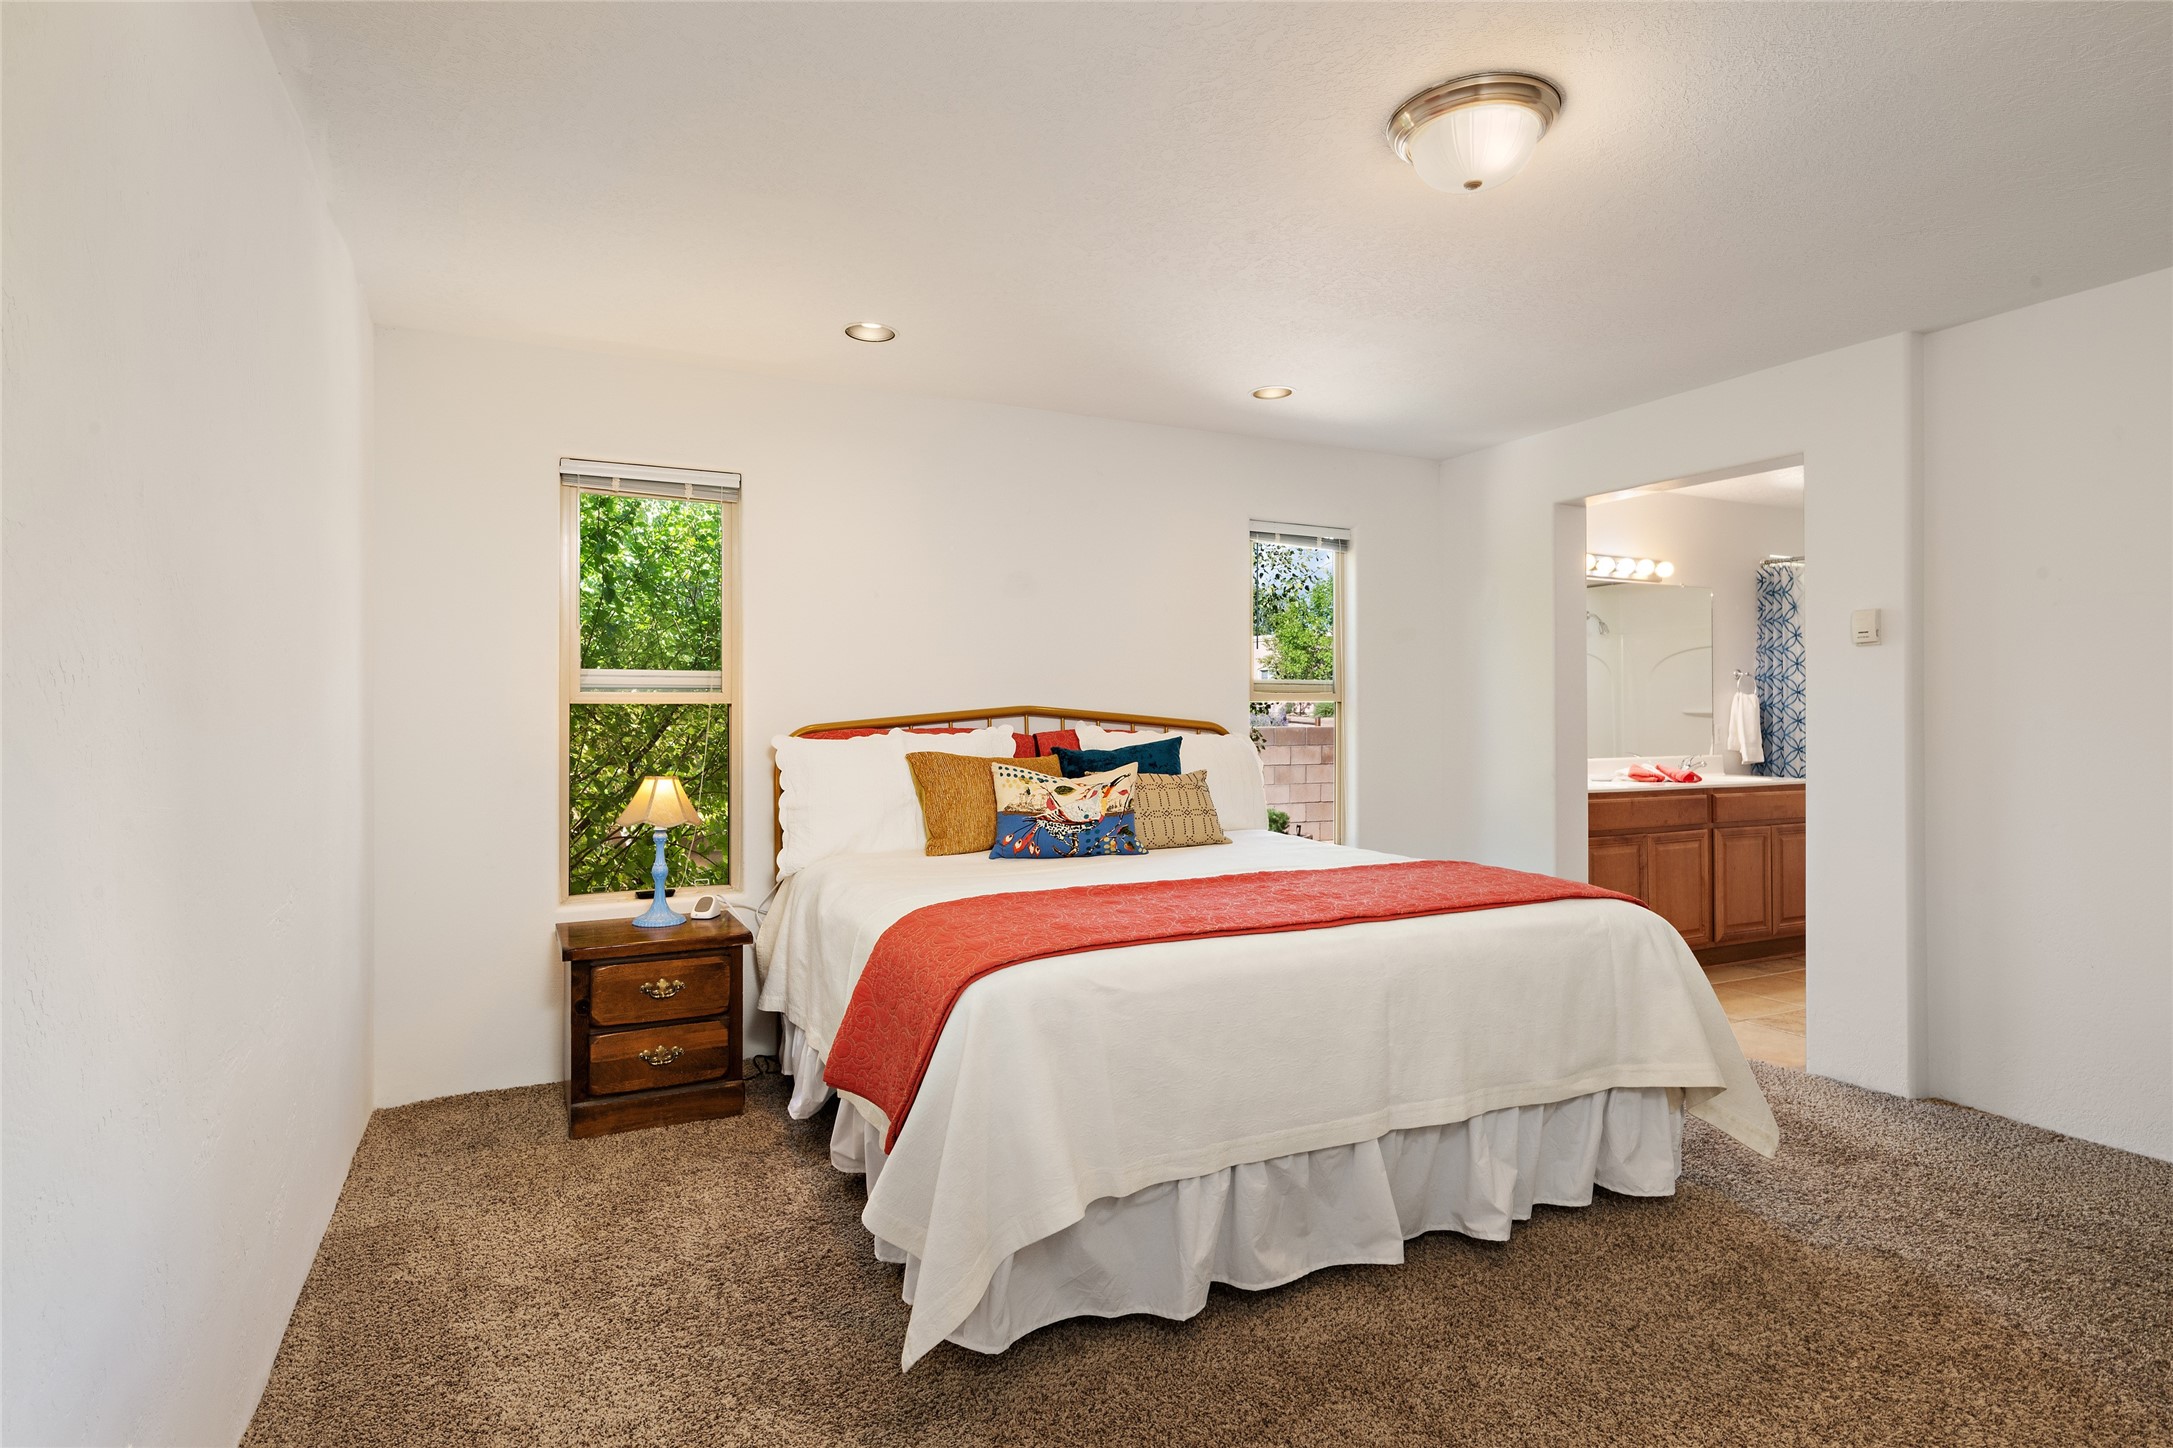 9 Victorio Peak, Santa Fe, New Mexico 87508, 3 Bedrooms Bedrooms, ,2 BathroomsBathrooms,Residential,For Sale,9 Victorio Peak,202341758